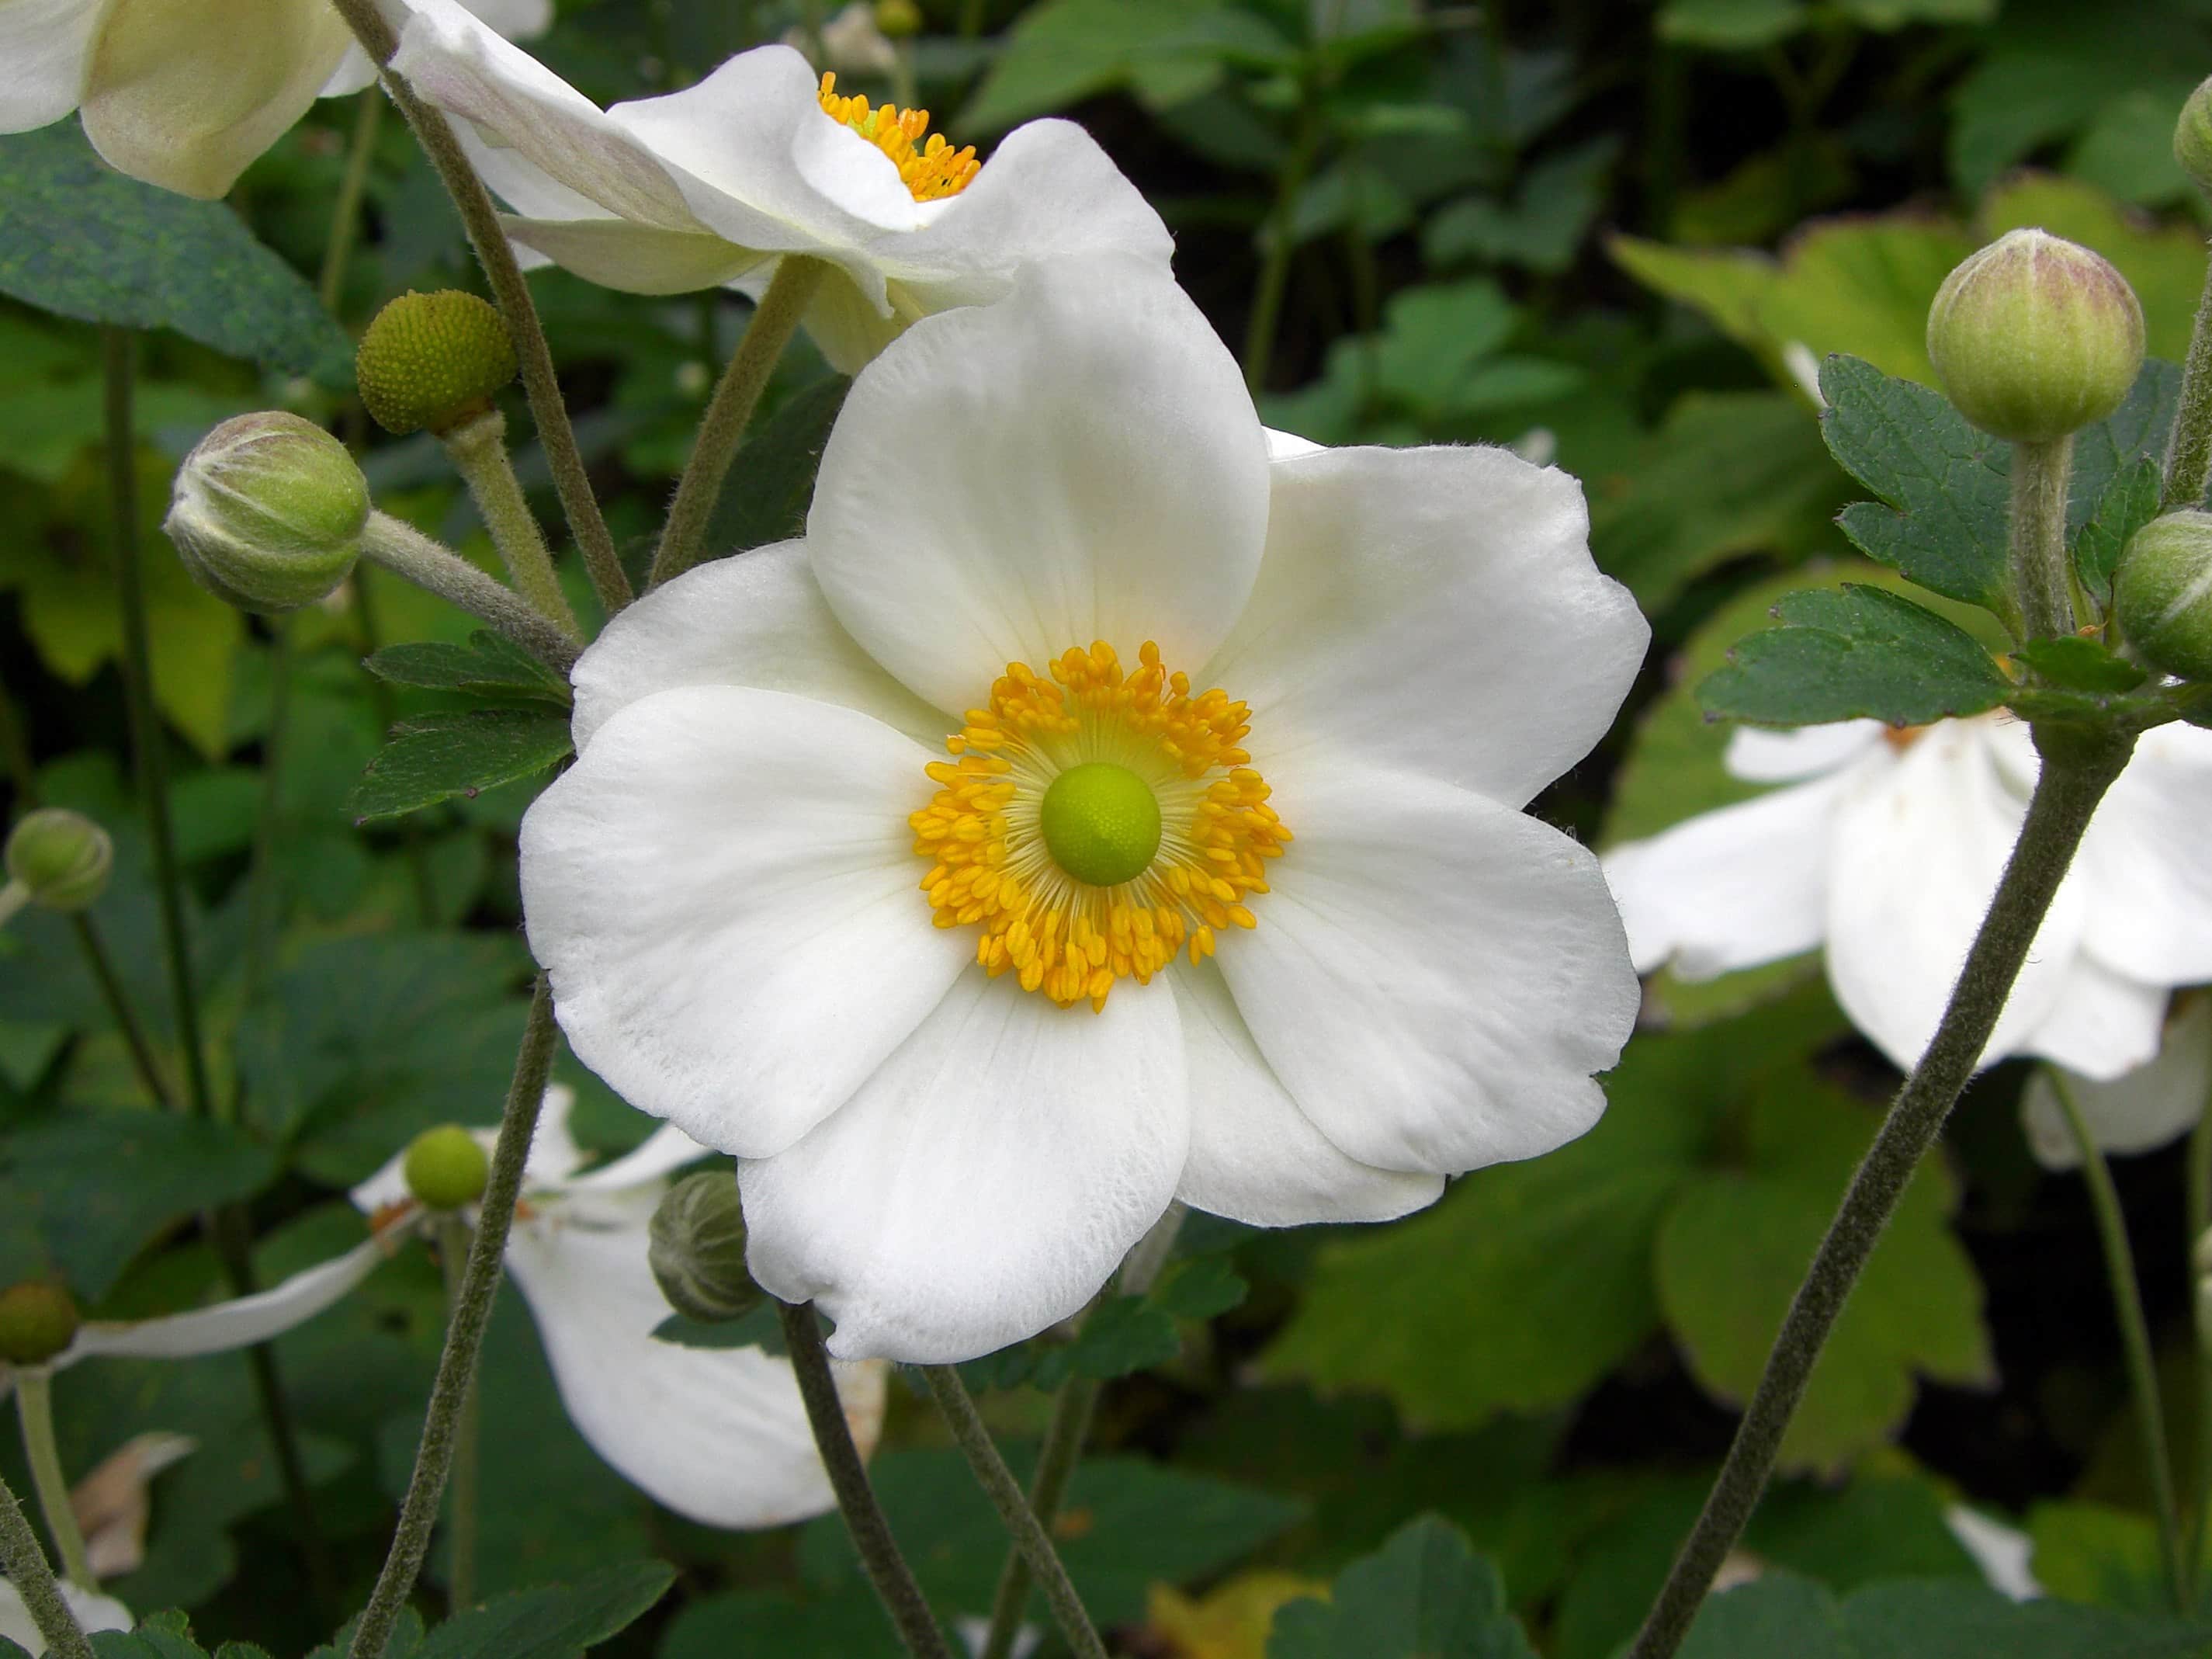 Image libre: temps d'été, jardin, nature, feuille, fleur blanche, rose  sauvage, herbe, pétale